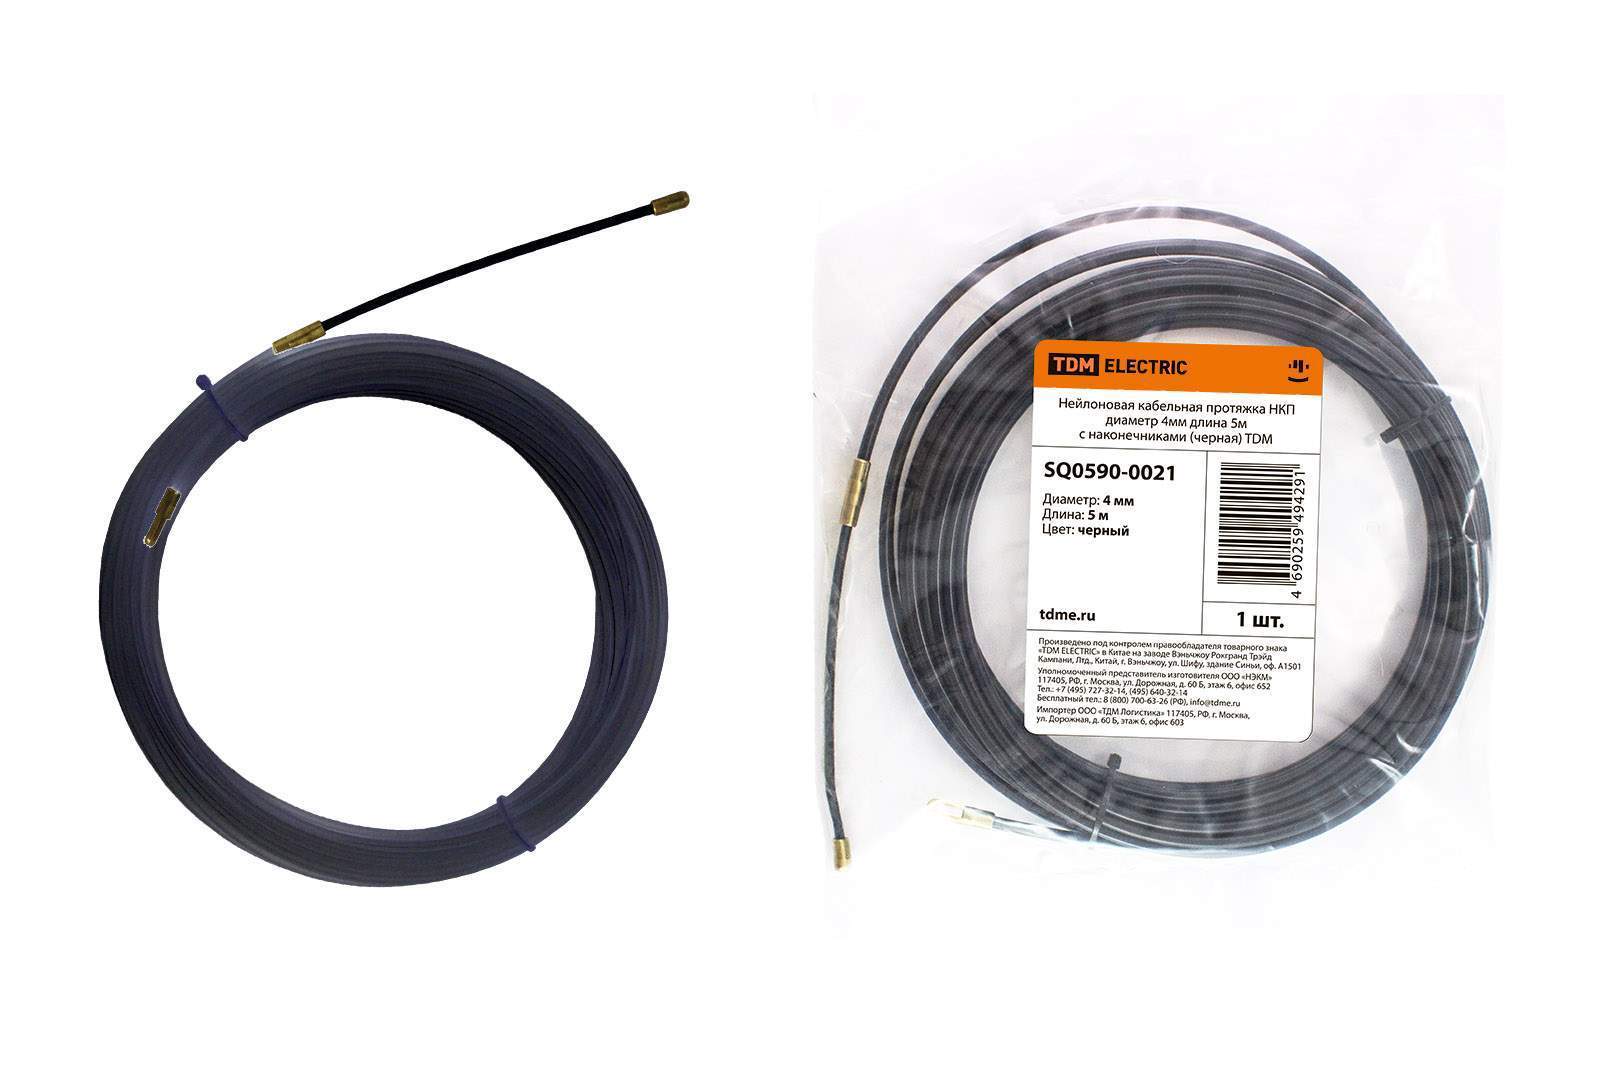 нейлоновая кабельная протяжка нкп диаметр 4мм длина 5м с наконечниками (черная) tdm от BTSprom.by